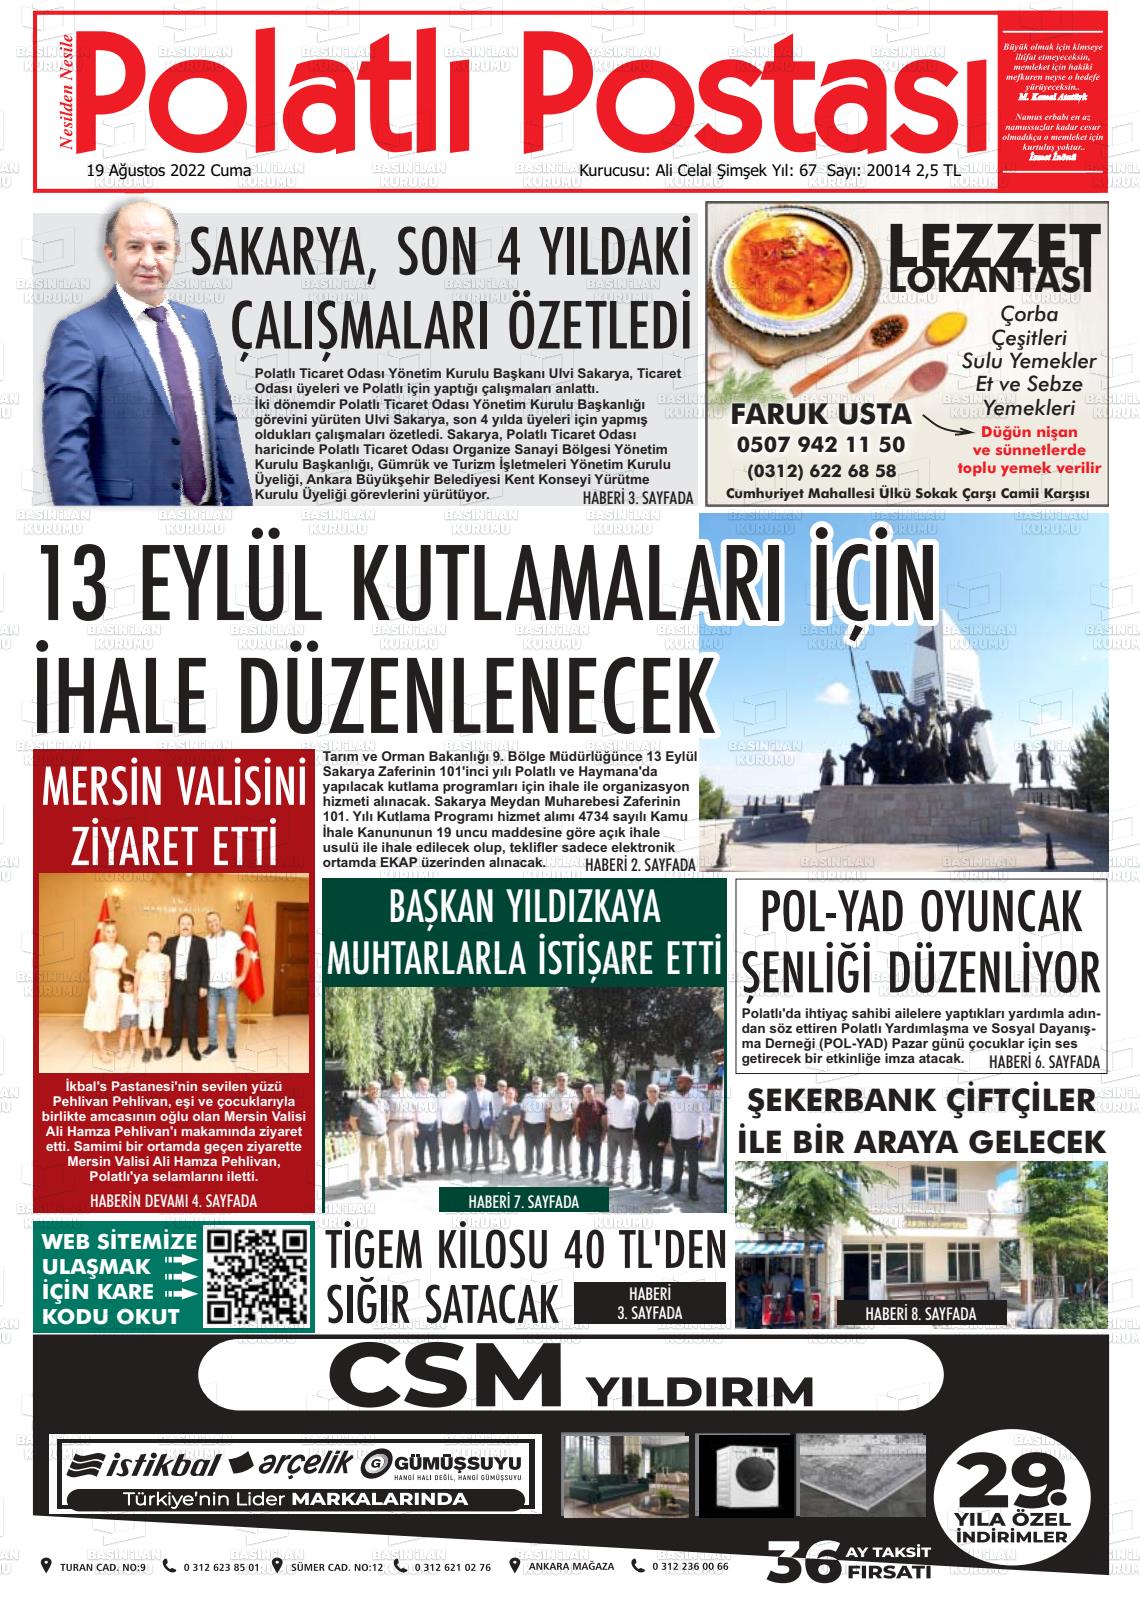 19 Ağustos 2022 Polatlı Postası Gazete Manşeti